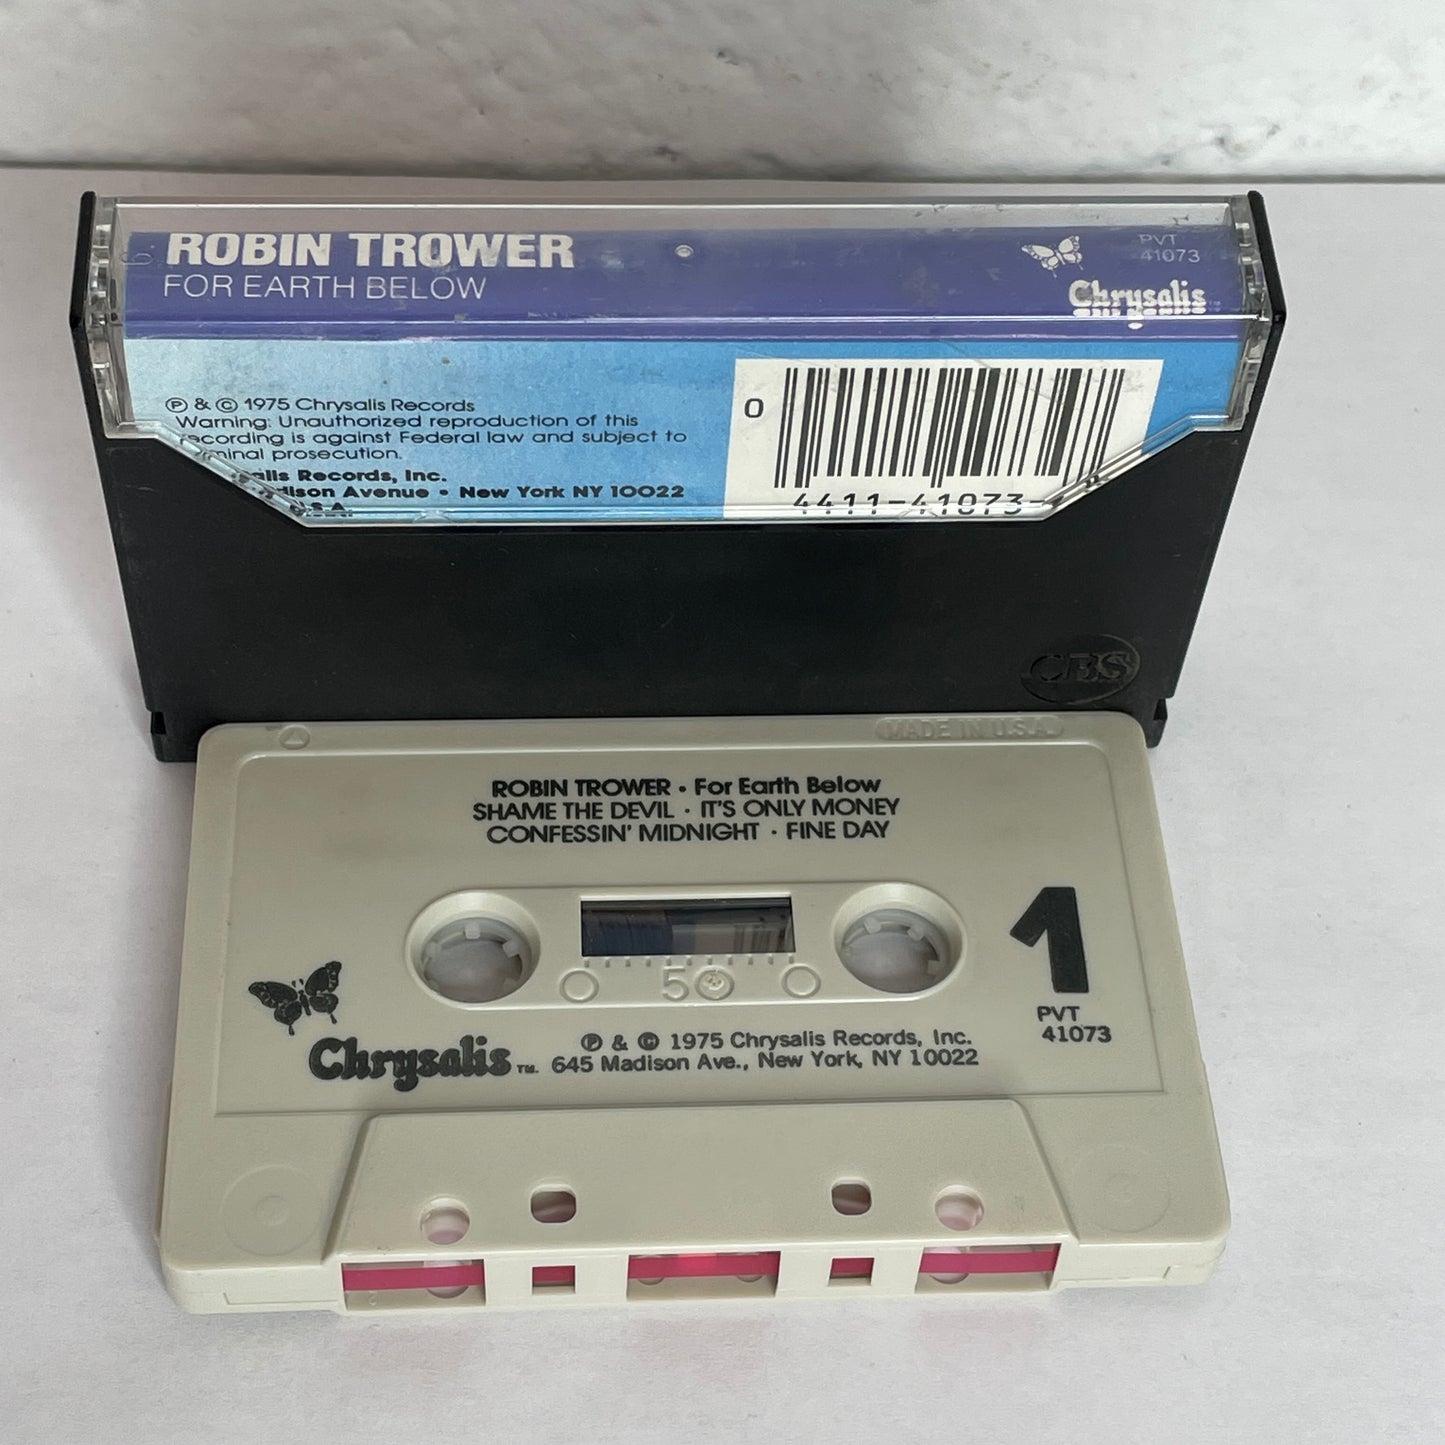 Robin Trower - For Earth Below original cassette tape